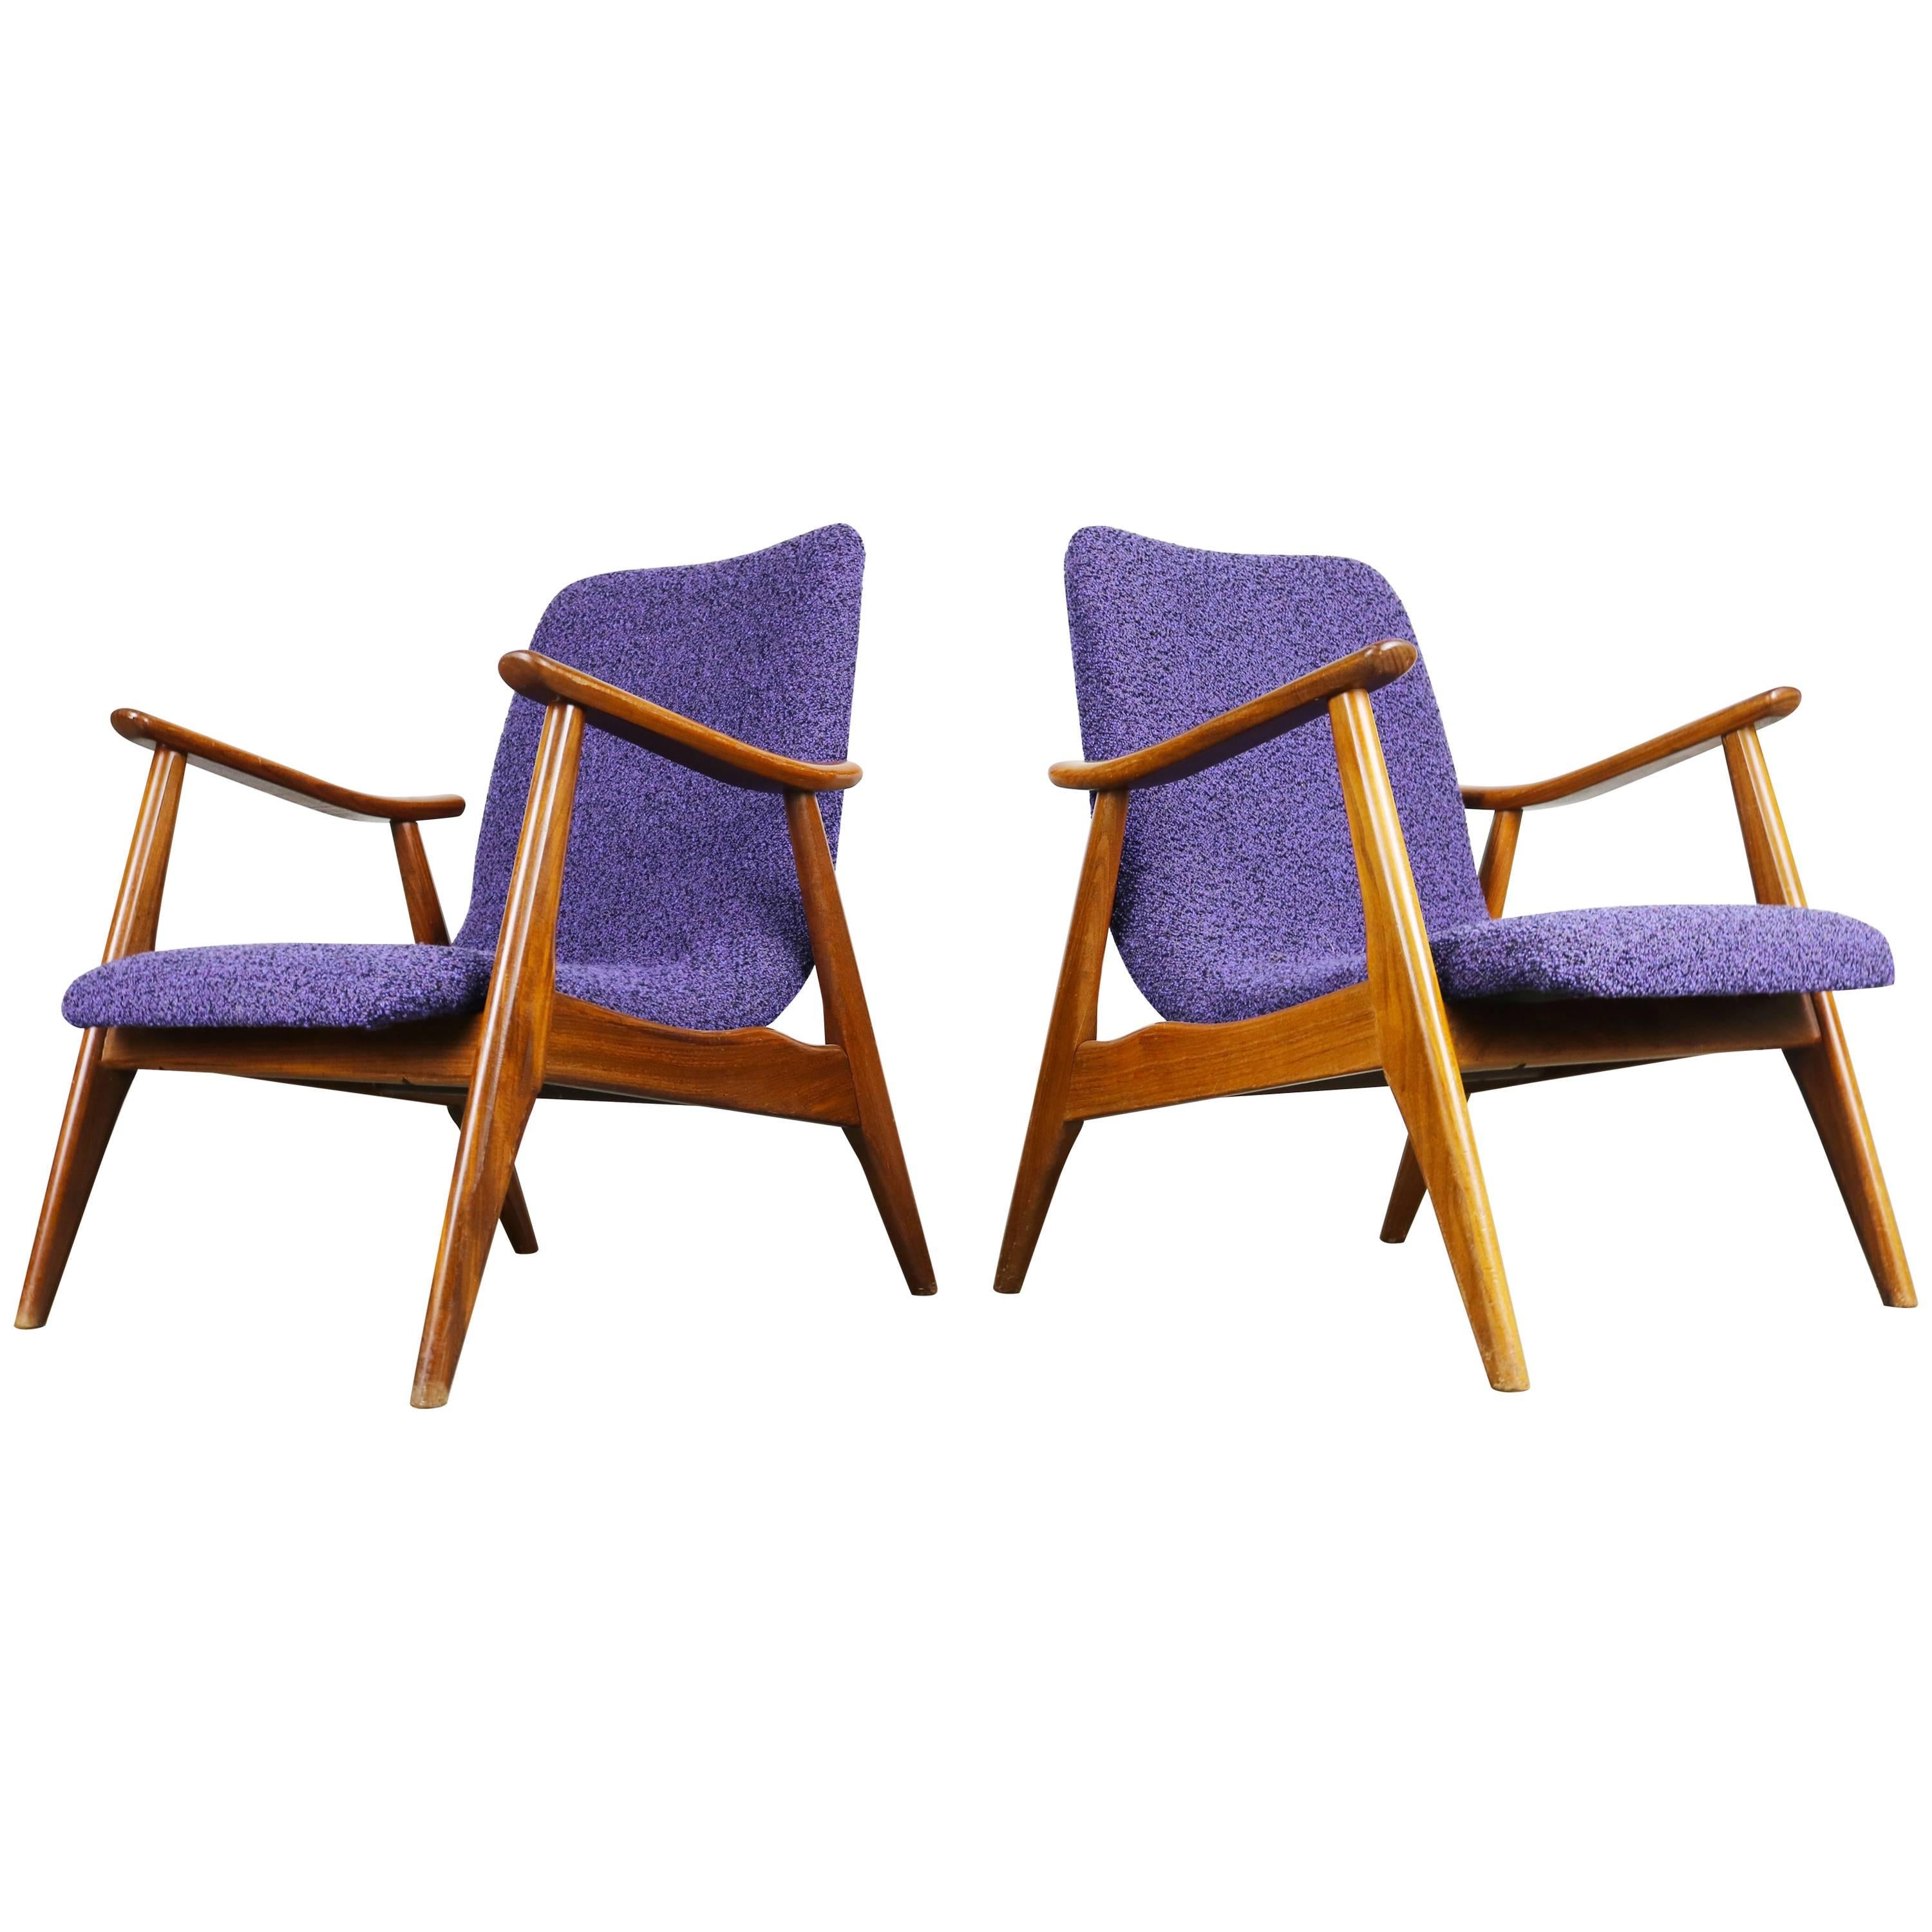 Set of Two Teak Lounge Chairs by Louis Van Teeffelen for Webe 1960 Brown Purple